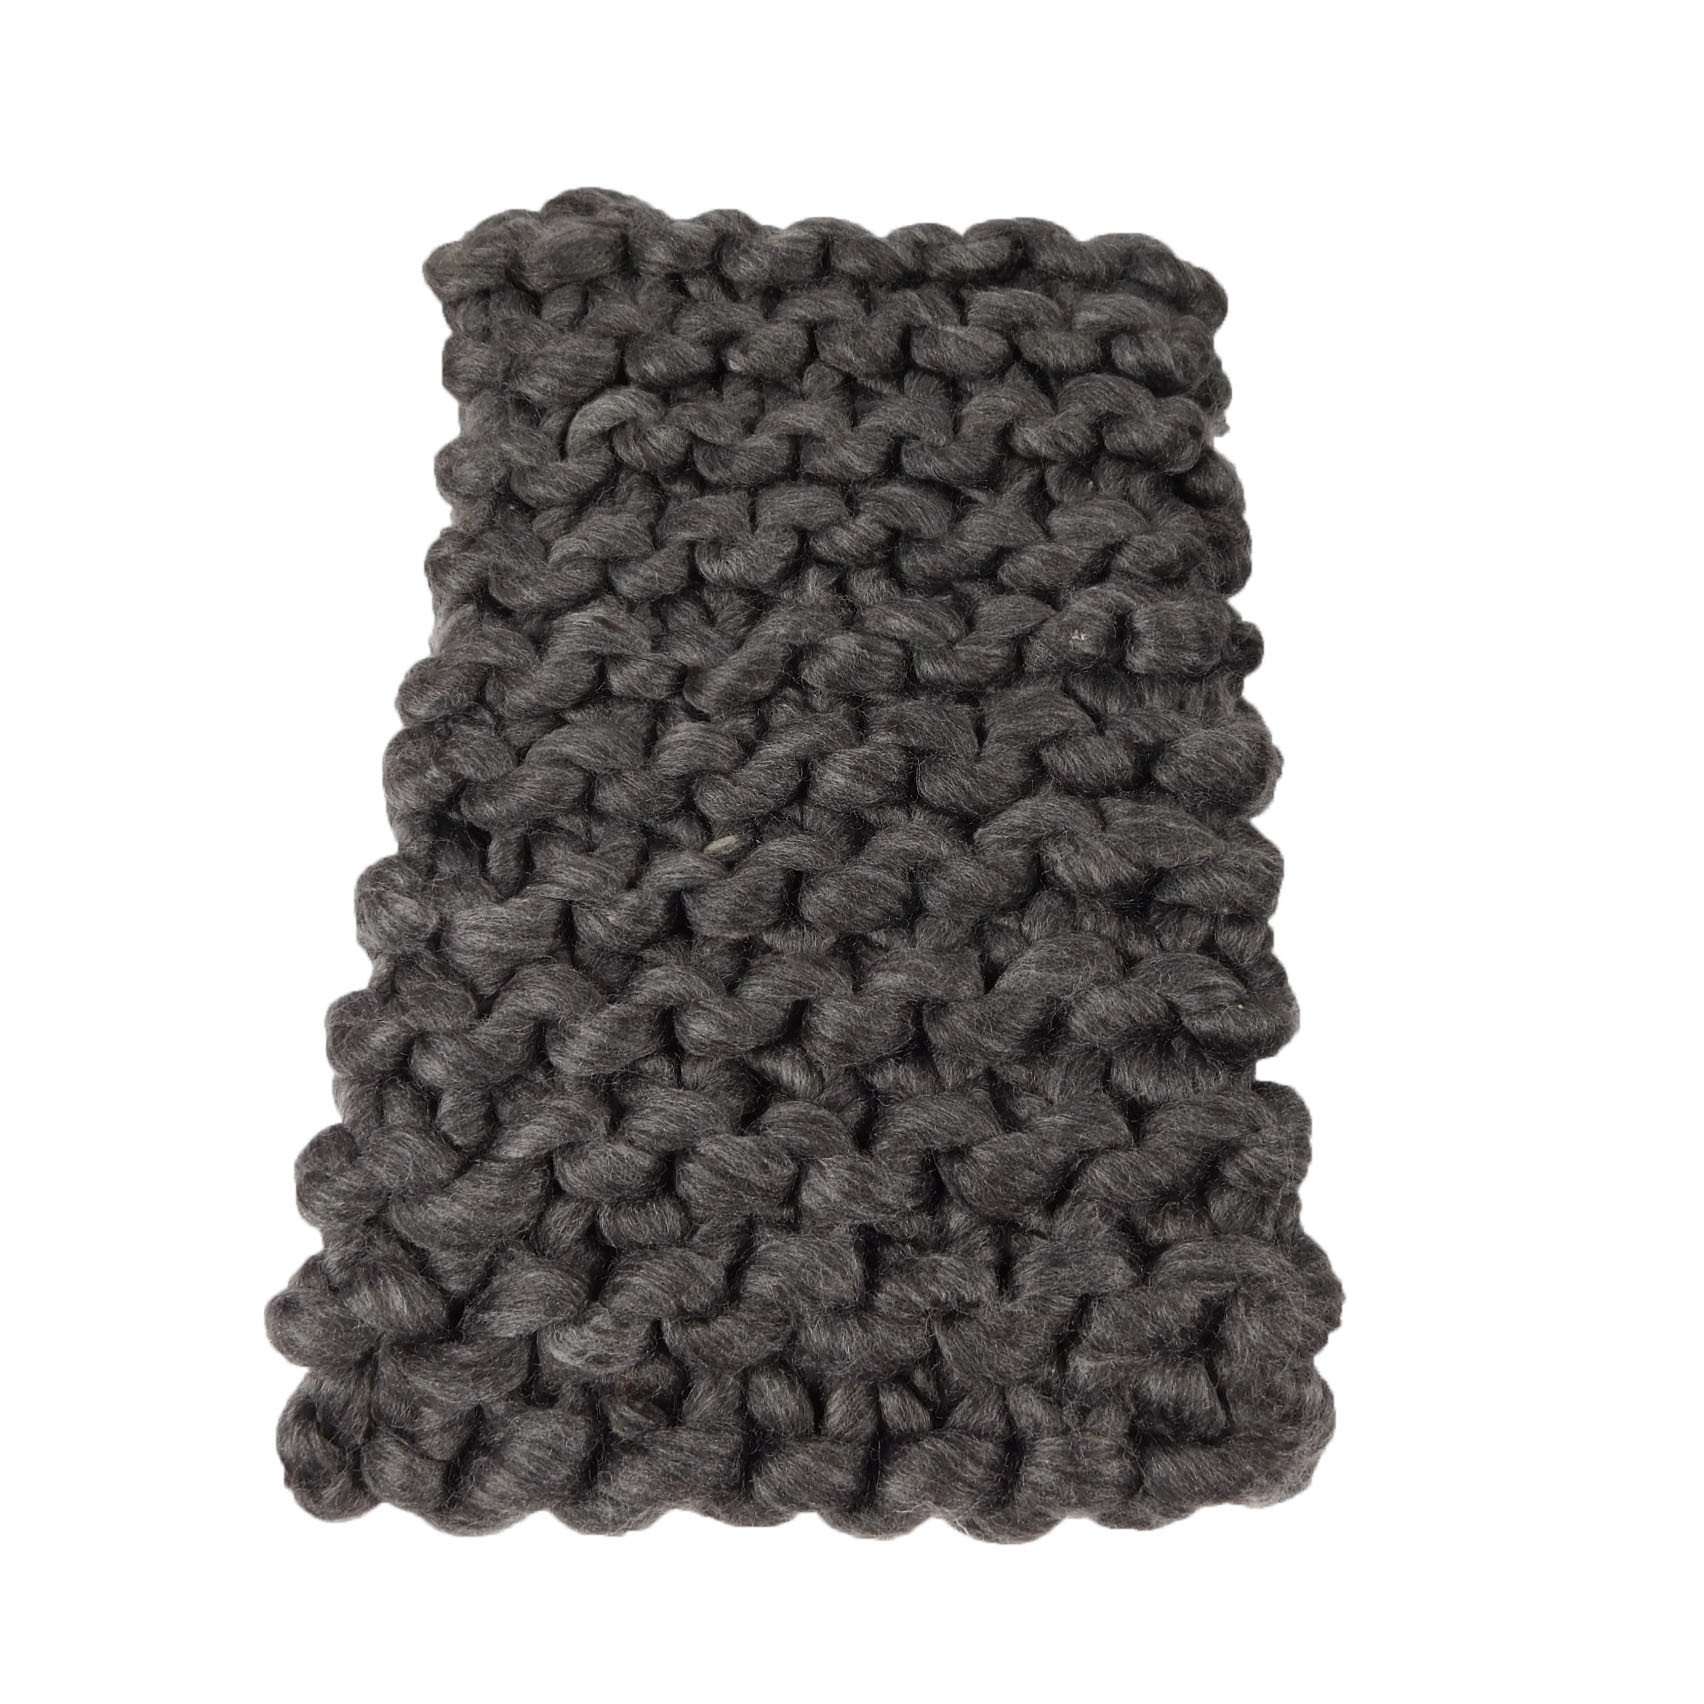 Chunky Knit Infinity Scarf, Scarves - SetarTrading Hats 